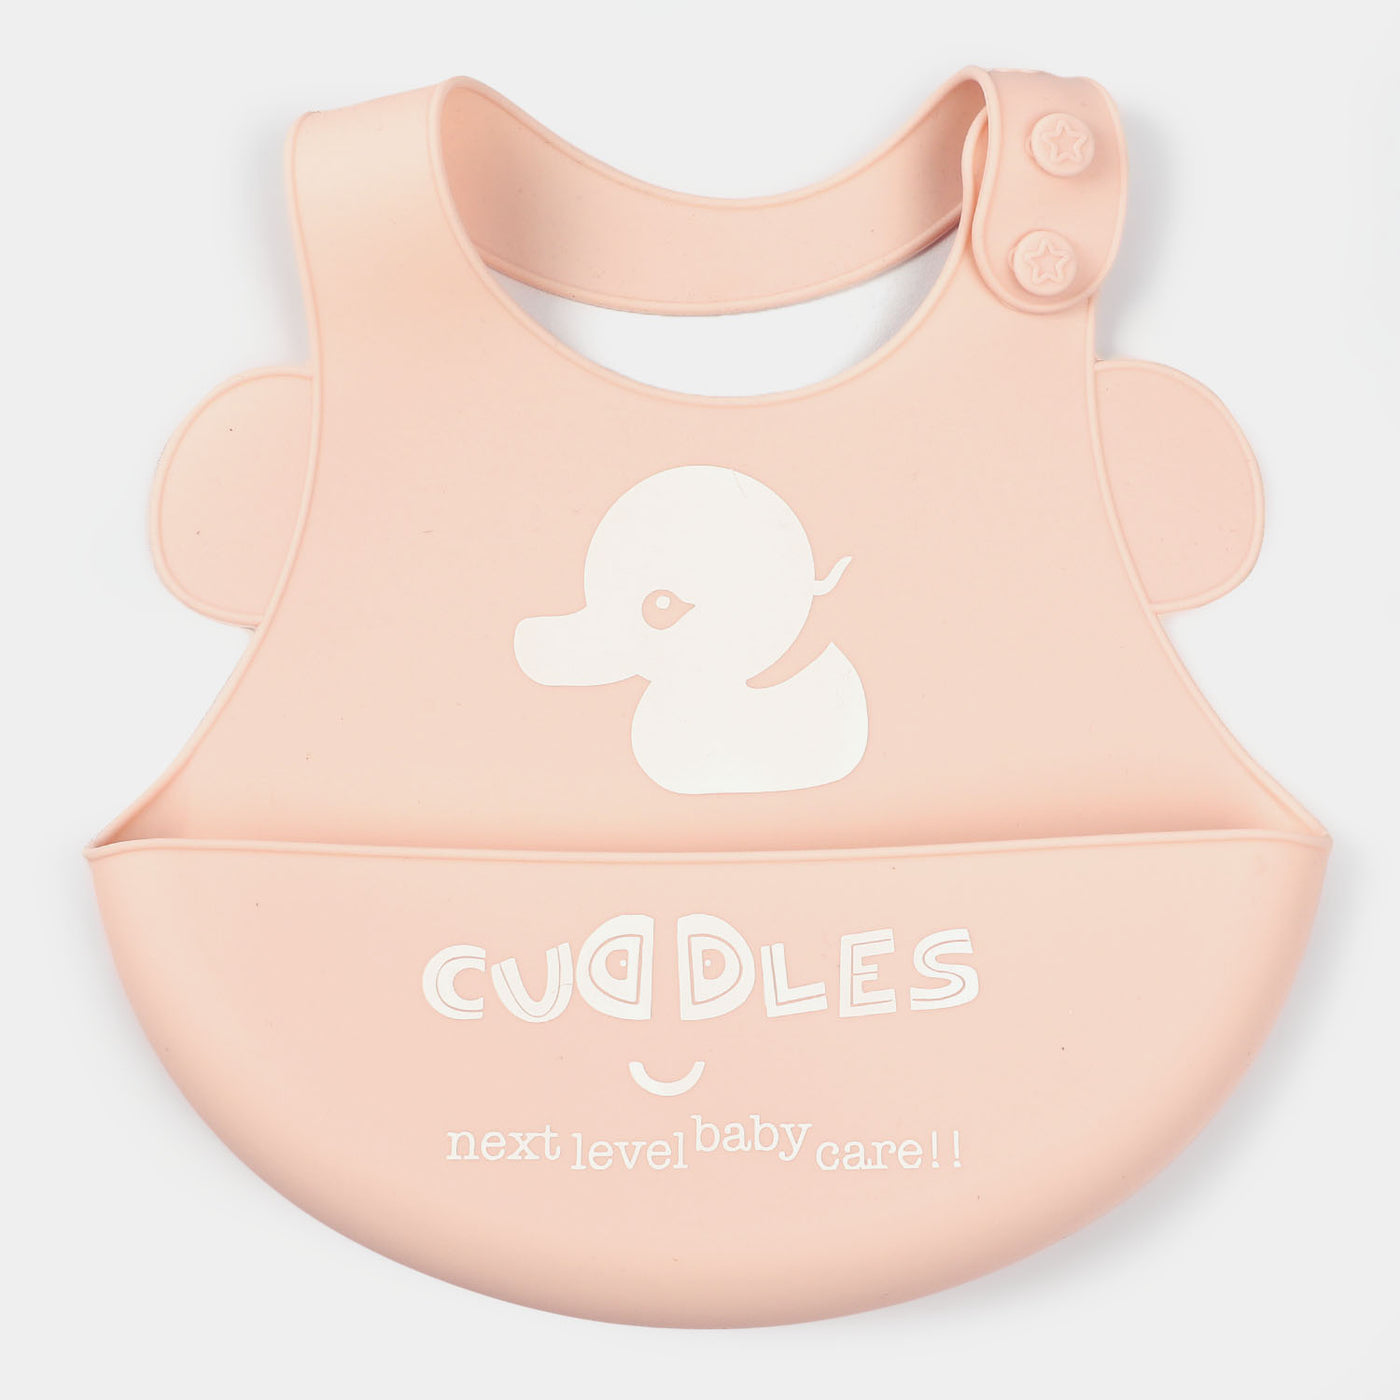 Fold & Go Cuddles Silicon Baby Bib | Pink